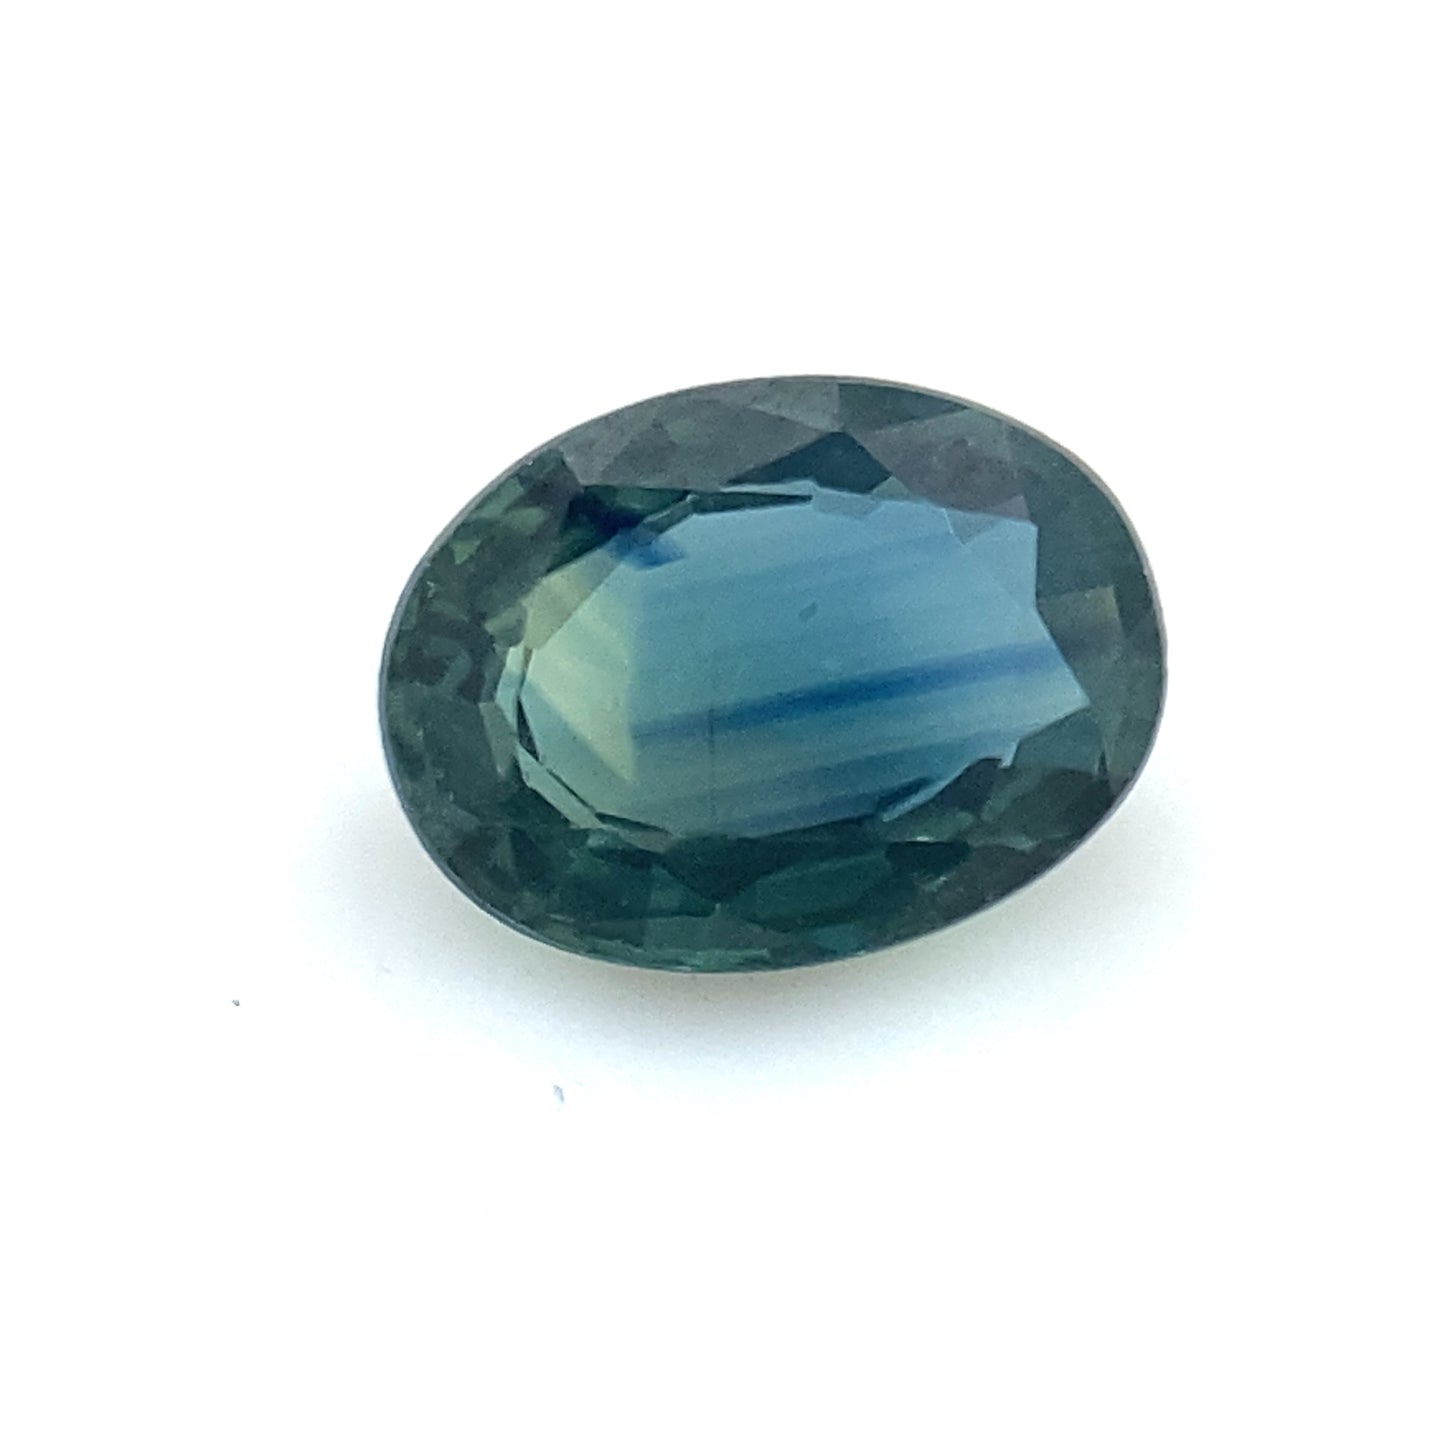 PIEDRA SUELTA / Zafiro bicolor en tonos azules y verdes corte oval de 0.87ct / Valor total 16,000 pesos